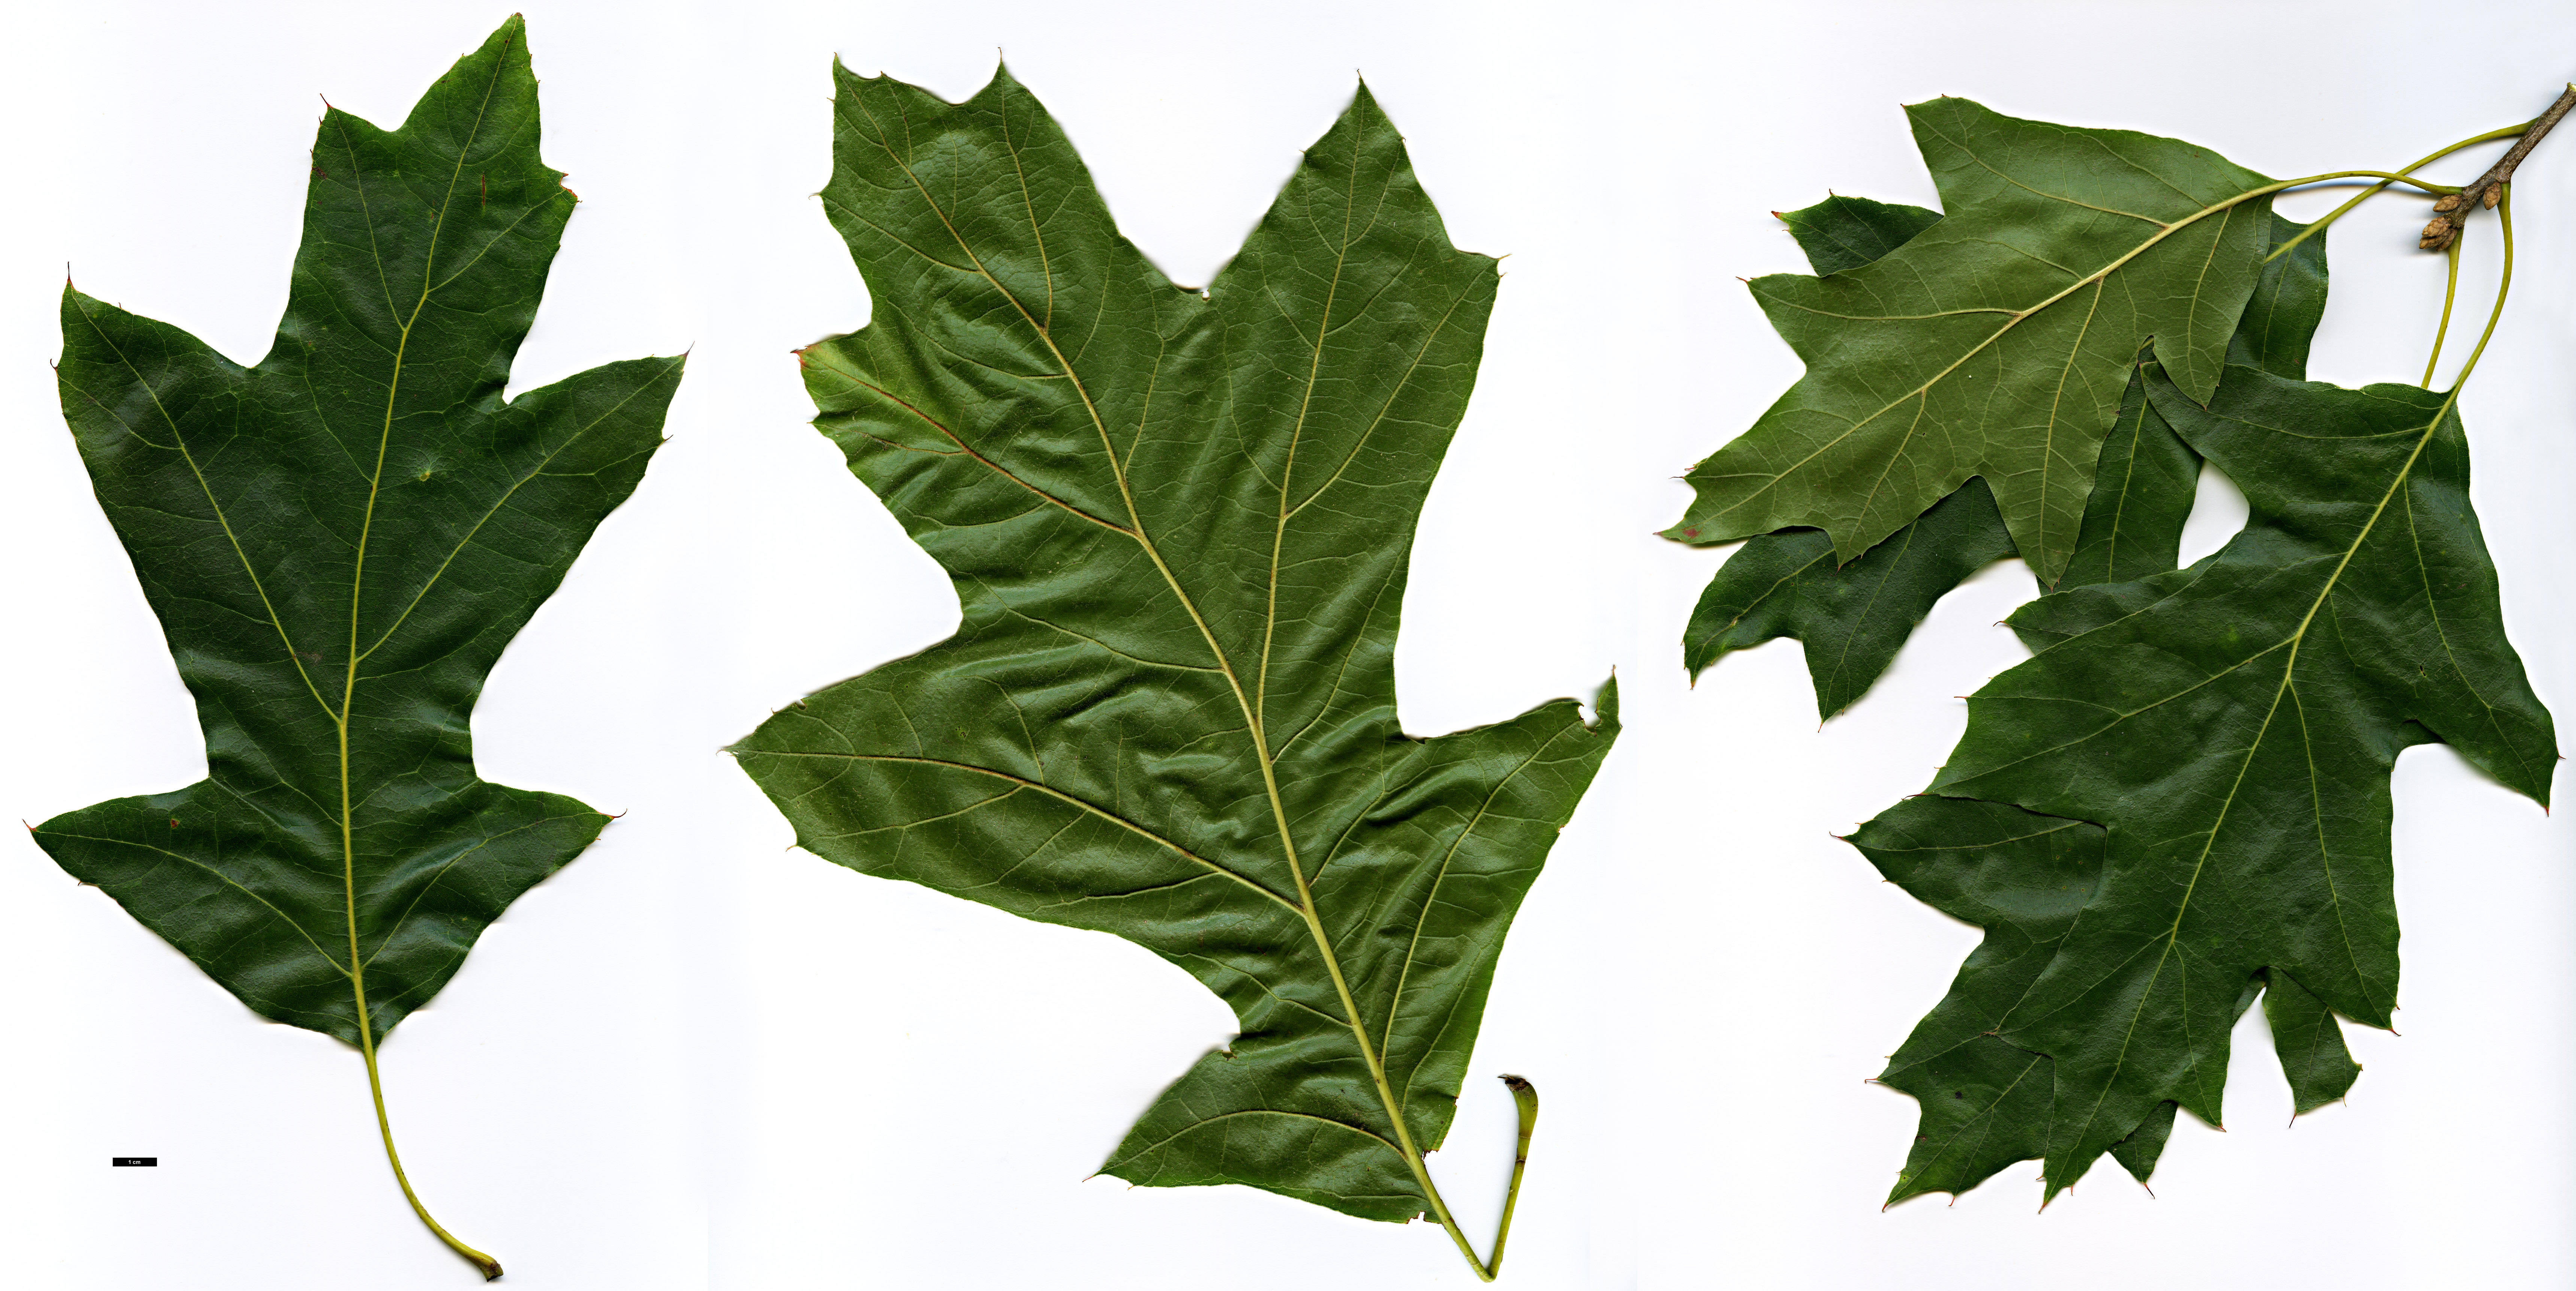 High resolution image: Family: Fagaceae - Genus: Quercus - Taxon: velutina - SpeciesSub: 'Rubrifolia'